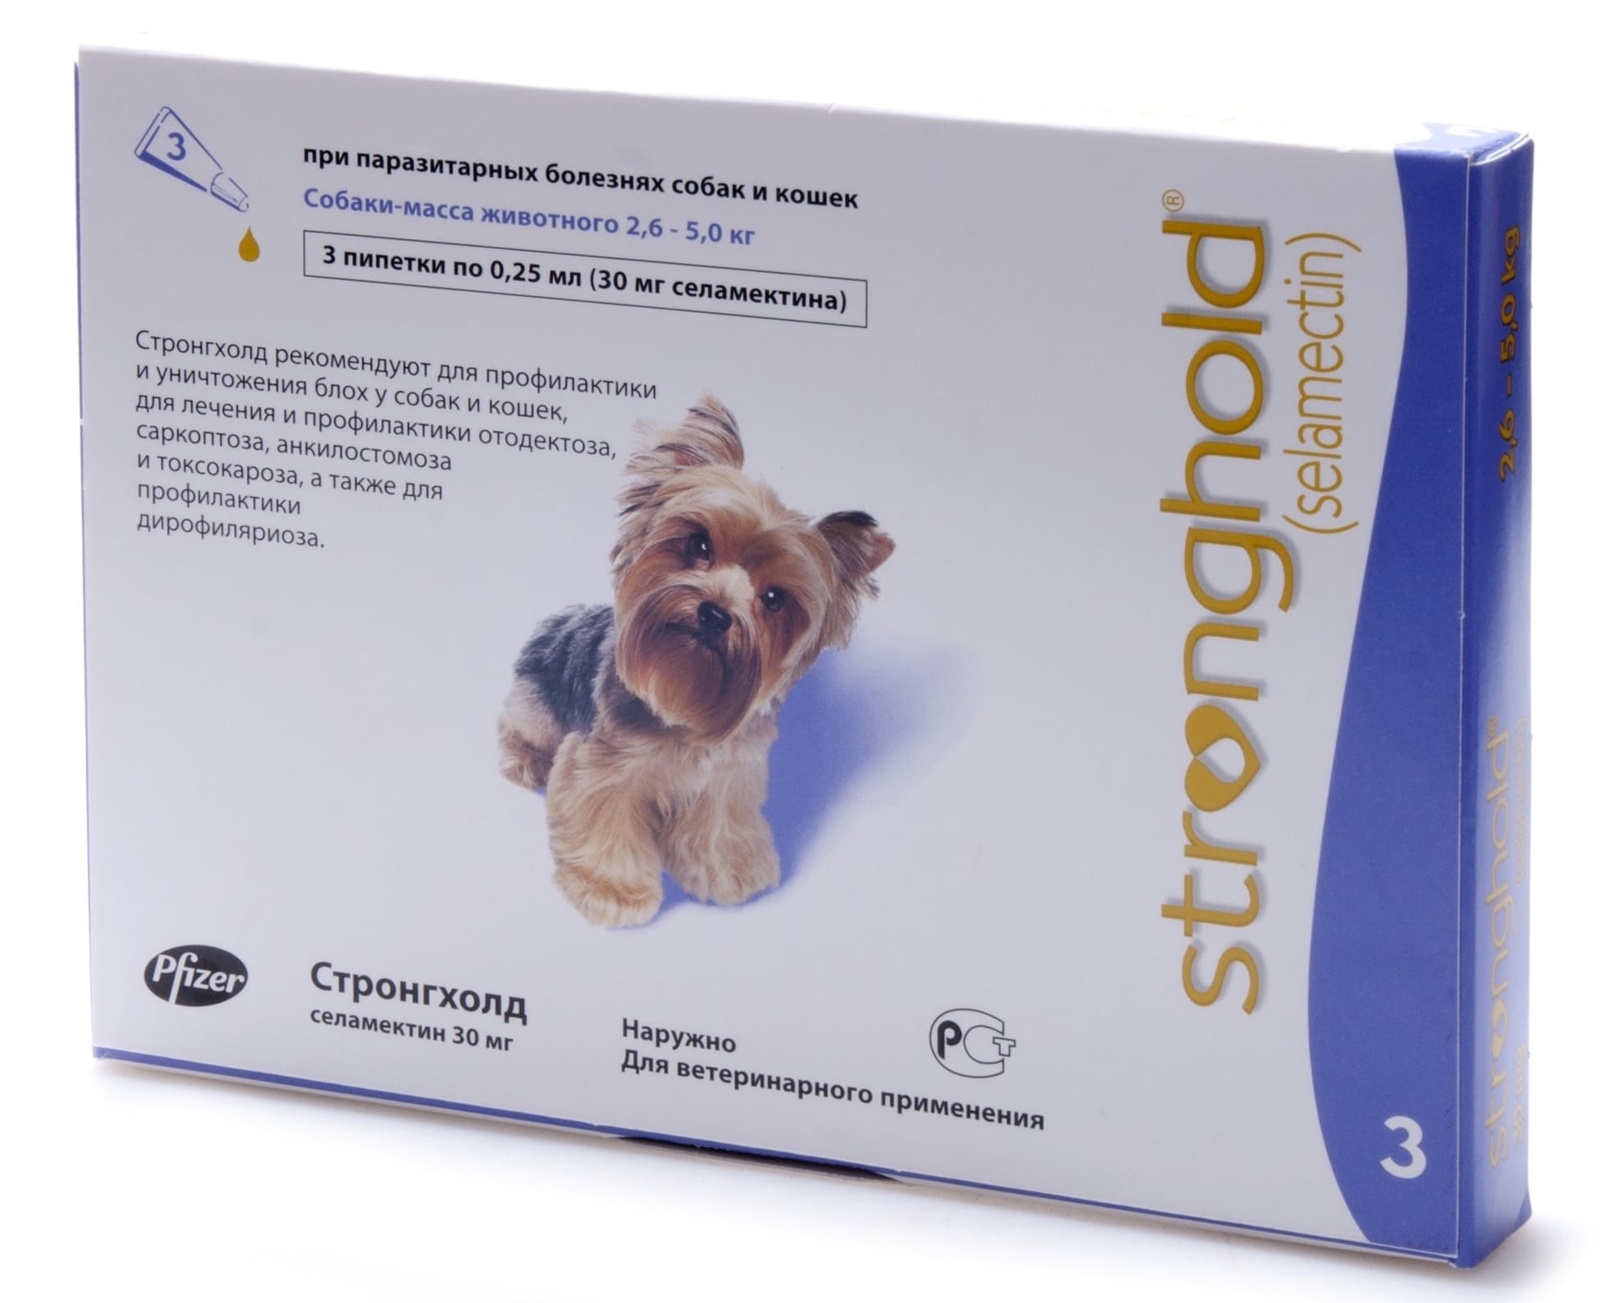 Zoetis стронгхолд, капли от наружных и внутренних паразитов для собак 2,6-5,0 кг, 3 пип/уп (10 г)